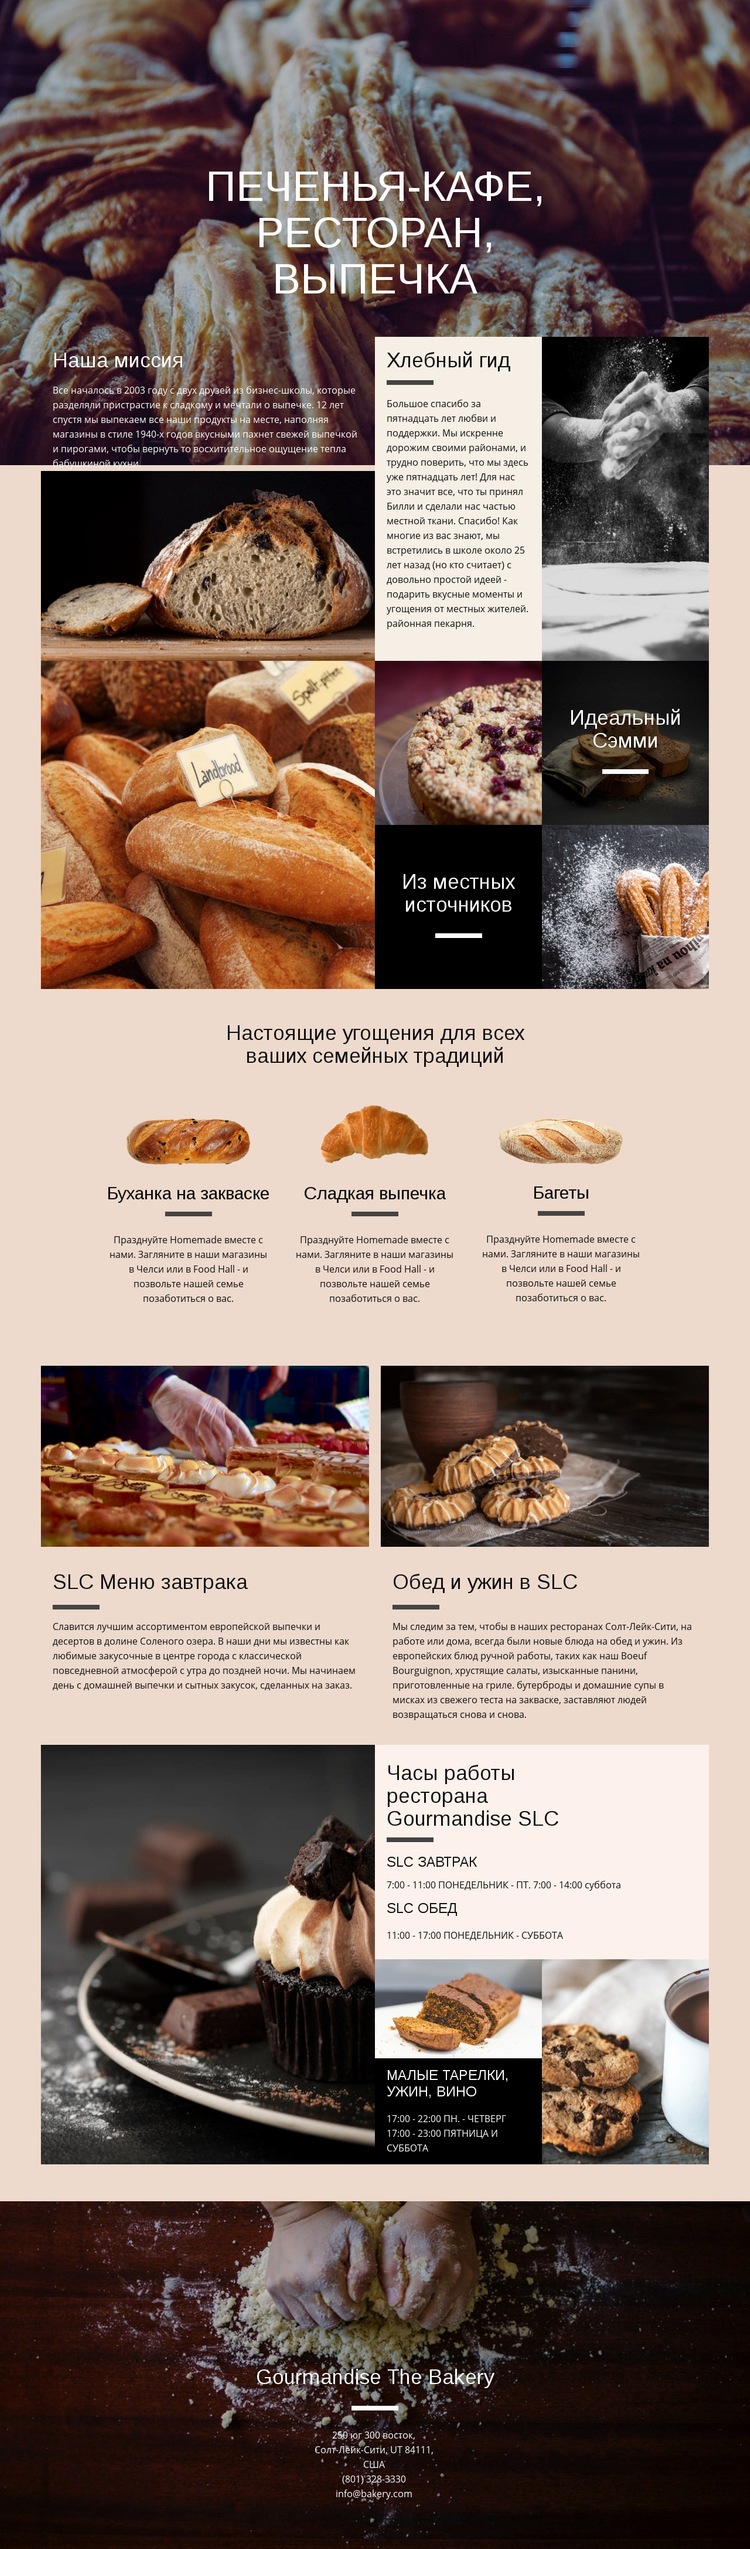 Пекарня Дизайн сайта